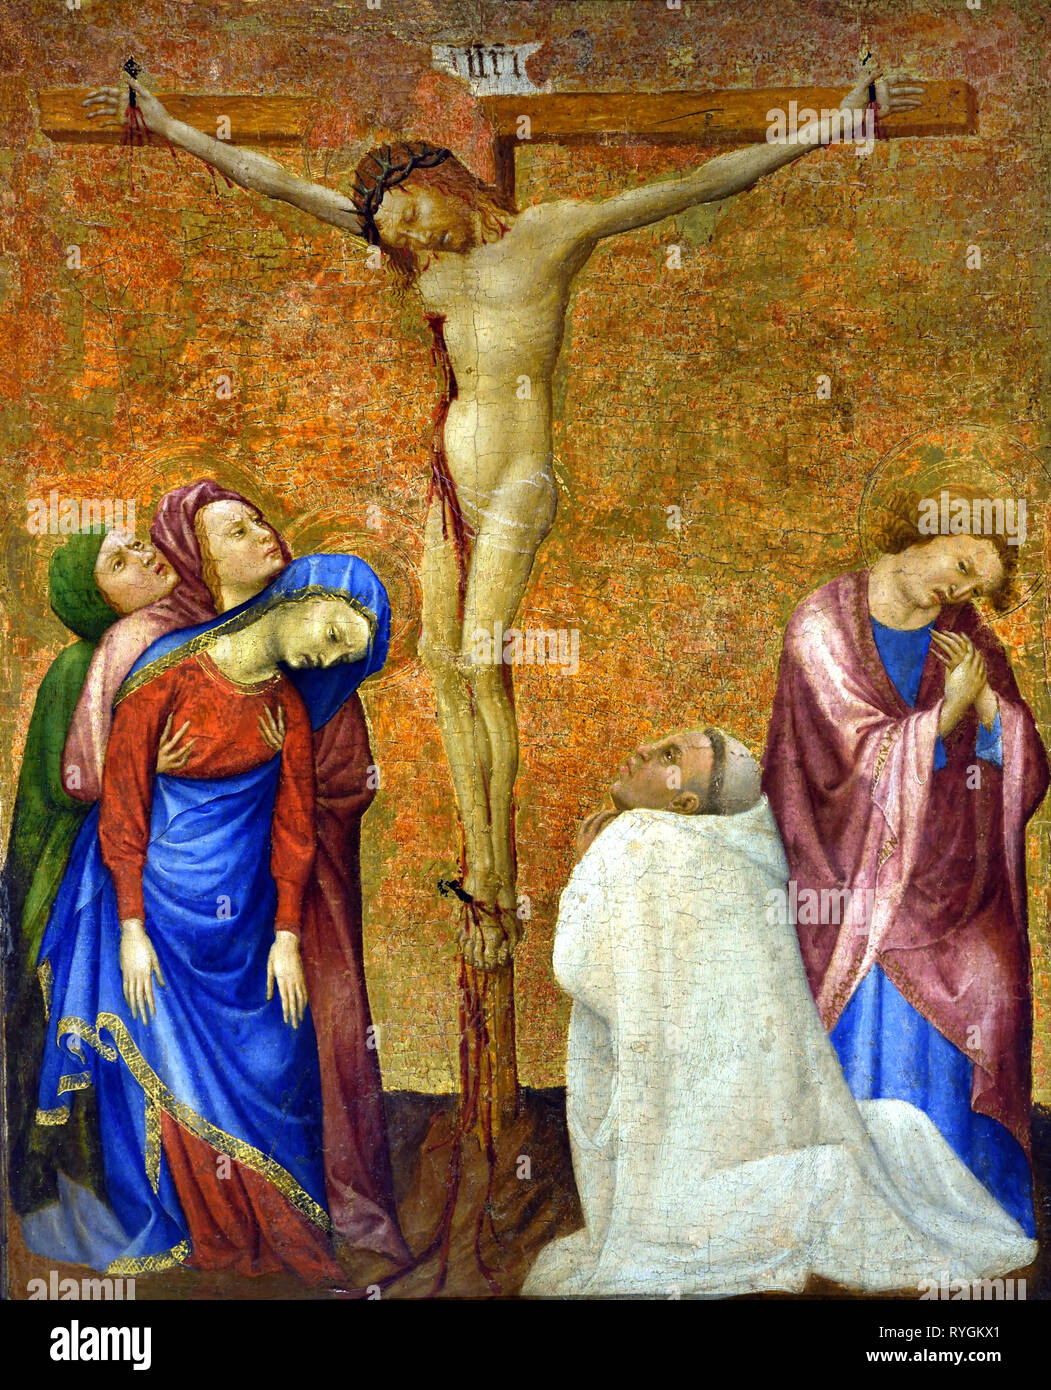 La Crucifixión con un Monje cartujo, 1389 -1395, Jean de BEAUMETZ, documentada desde 1361 - 1396 Francia, el francés. ( Pintado para las celdas de los monjes y el prior de la Cartuja de Champmol, cerca de Dijon, y encargado por el duque de Borgoña, Philippe le Hardi. ) Foto de stock